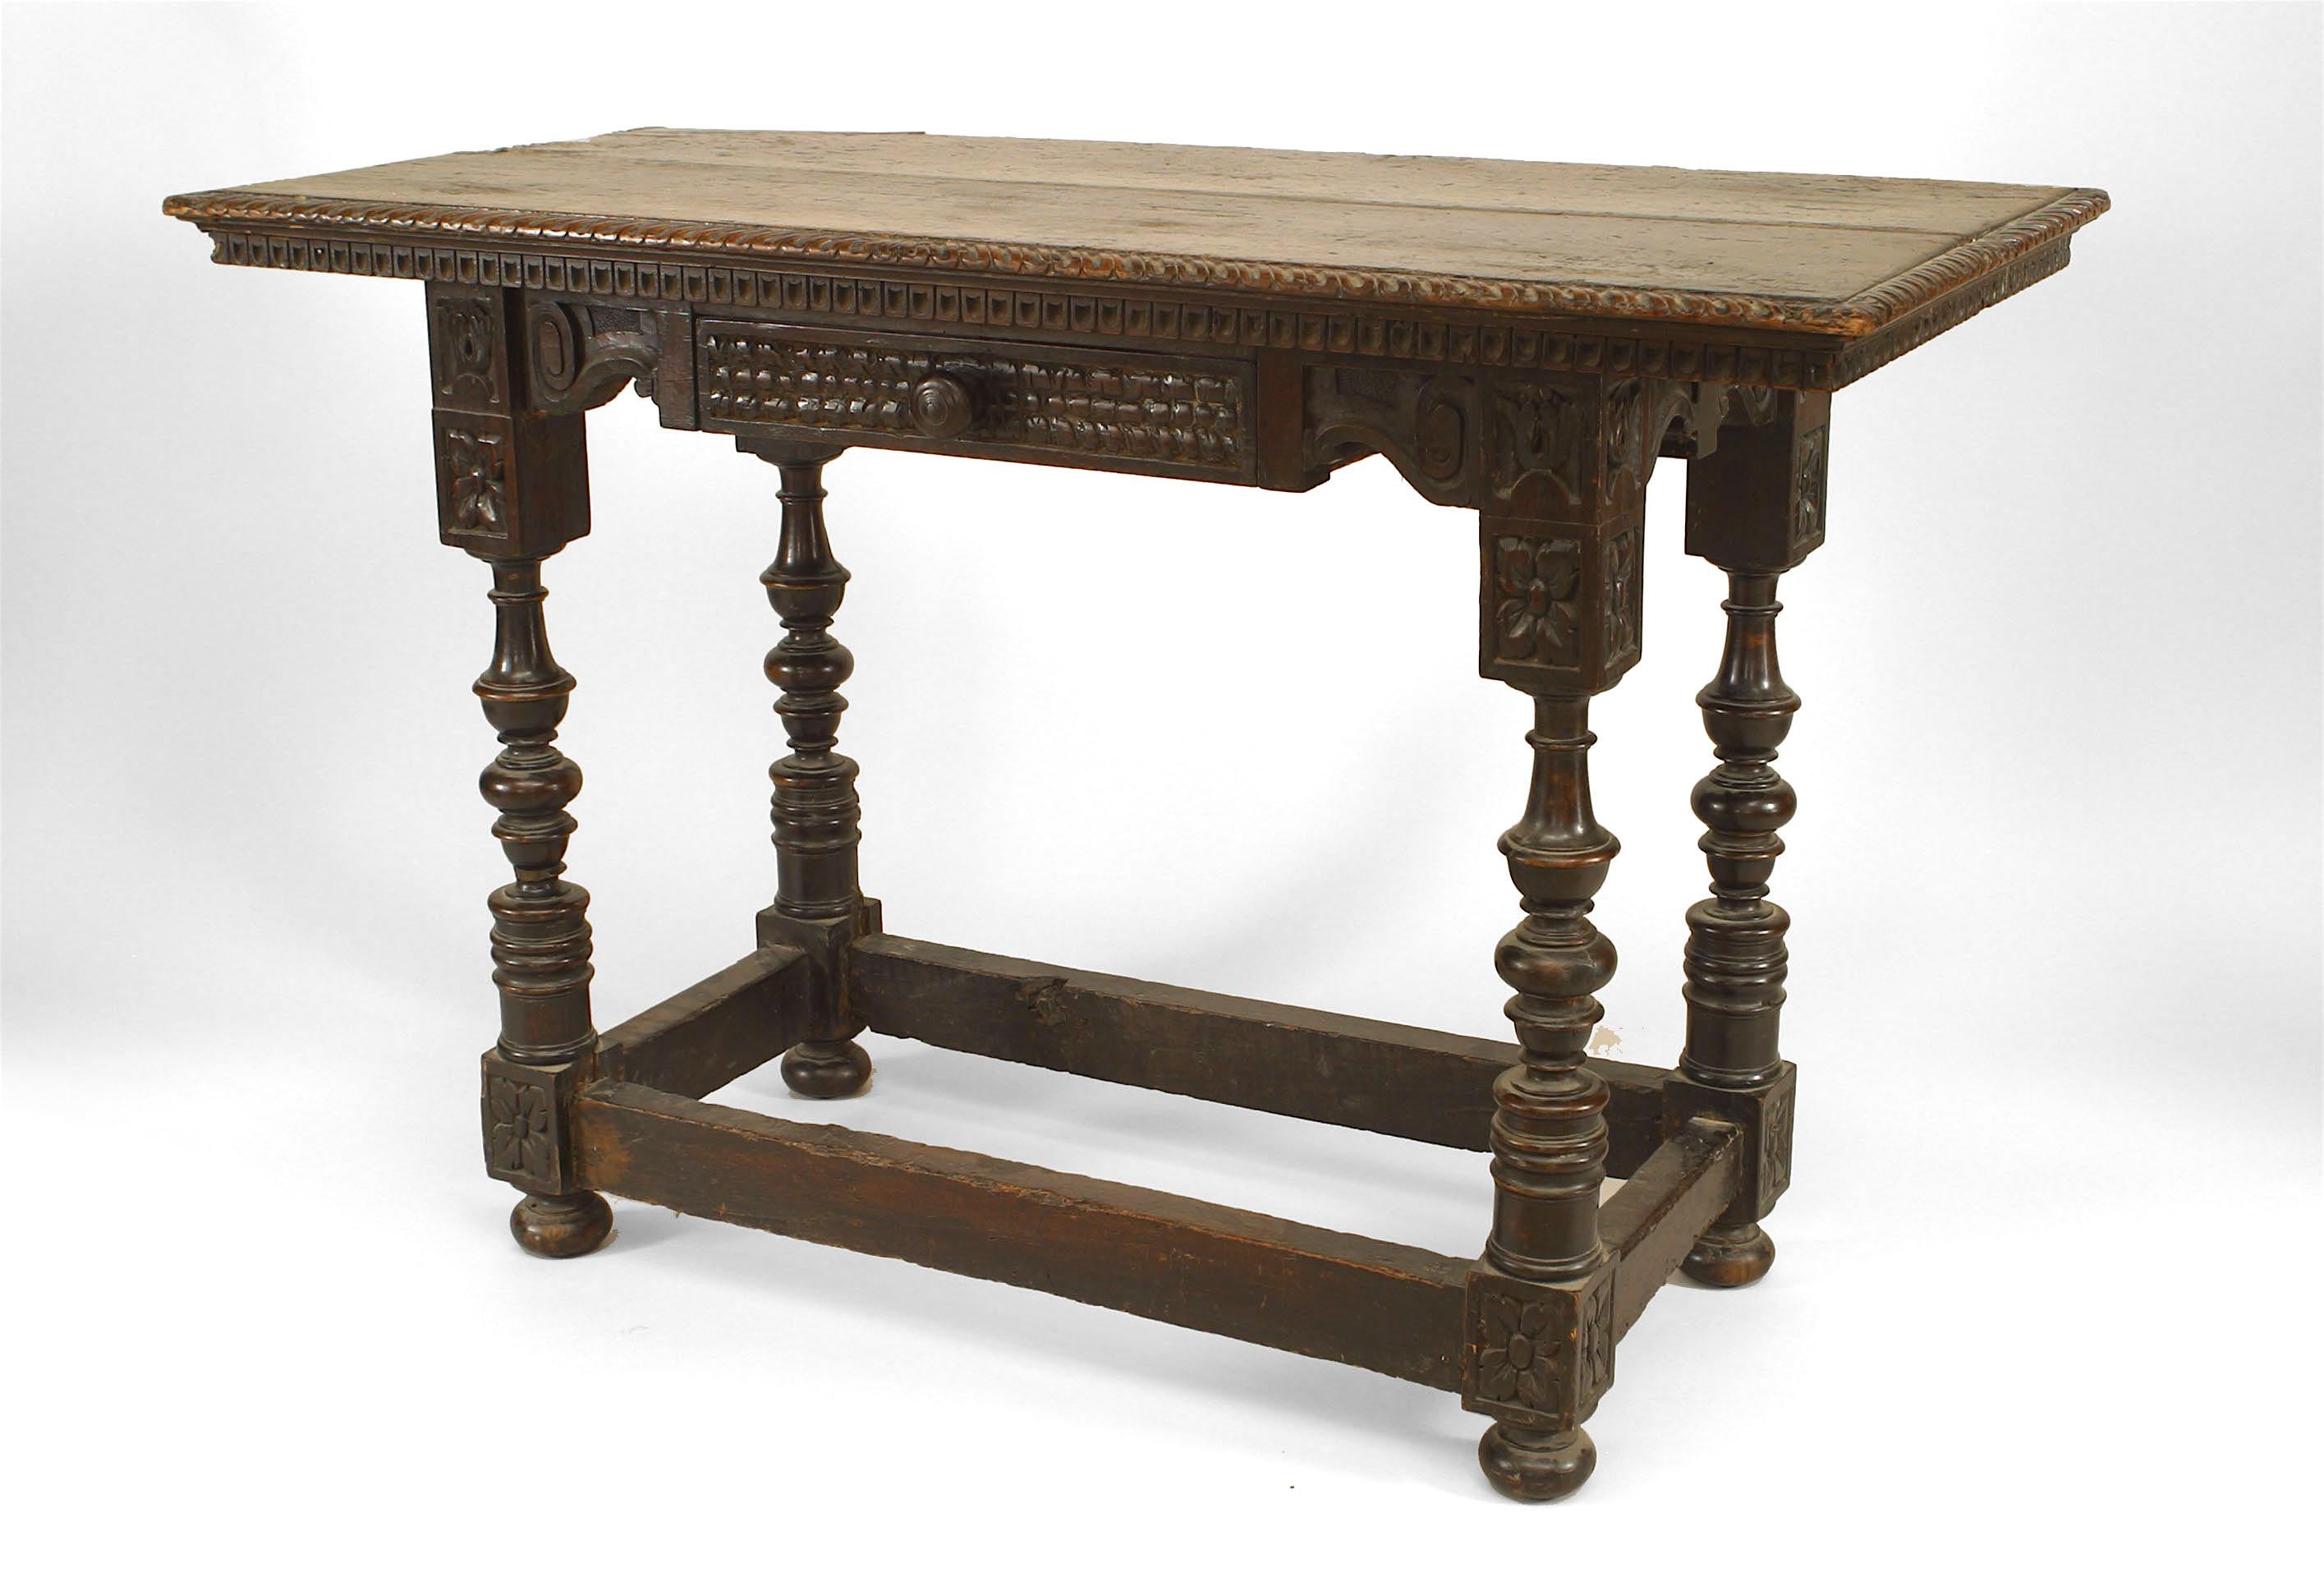 Table console de style Renaissance anglaise (XIXe siècle) en noyer sculpté, avec tiroir et brancard sur pieds tournés.
